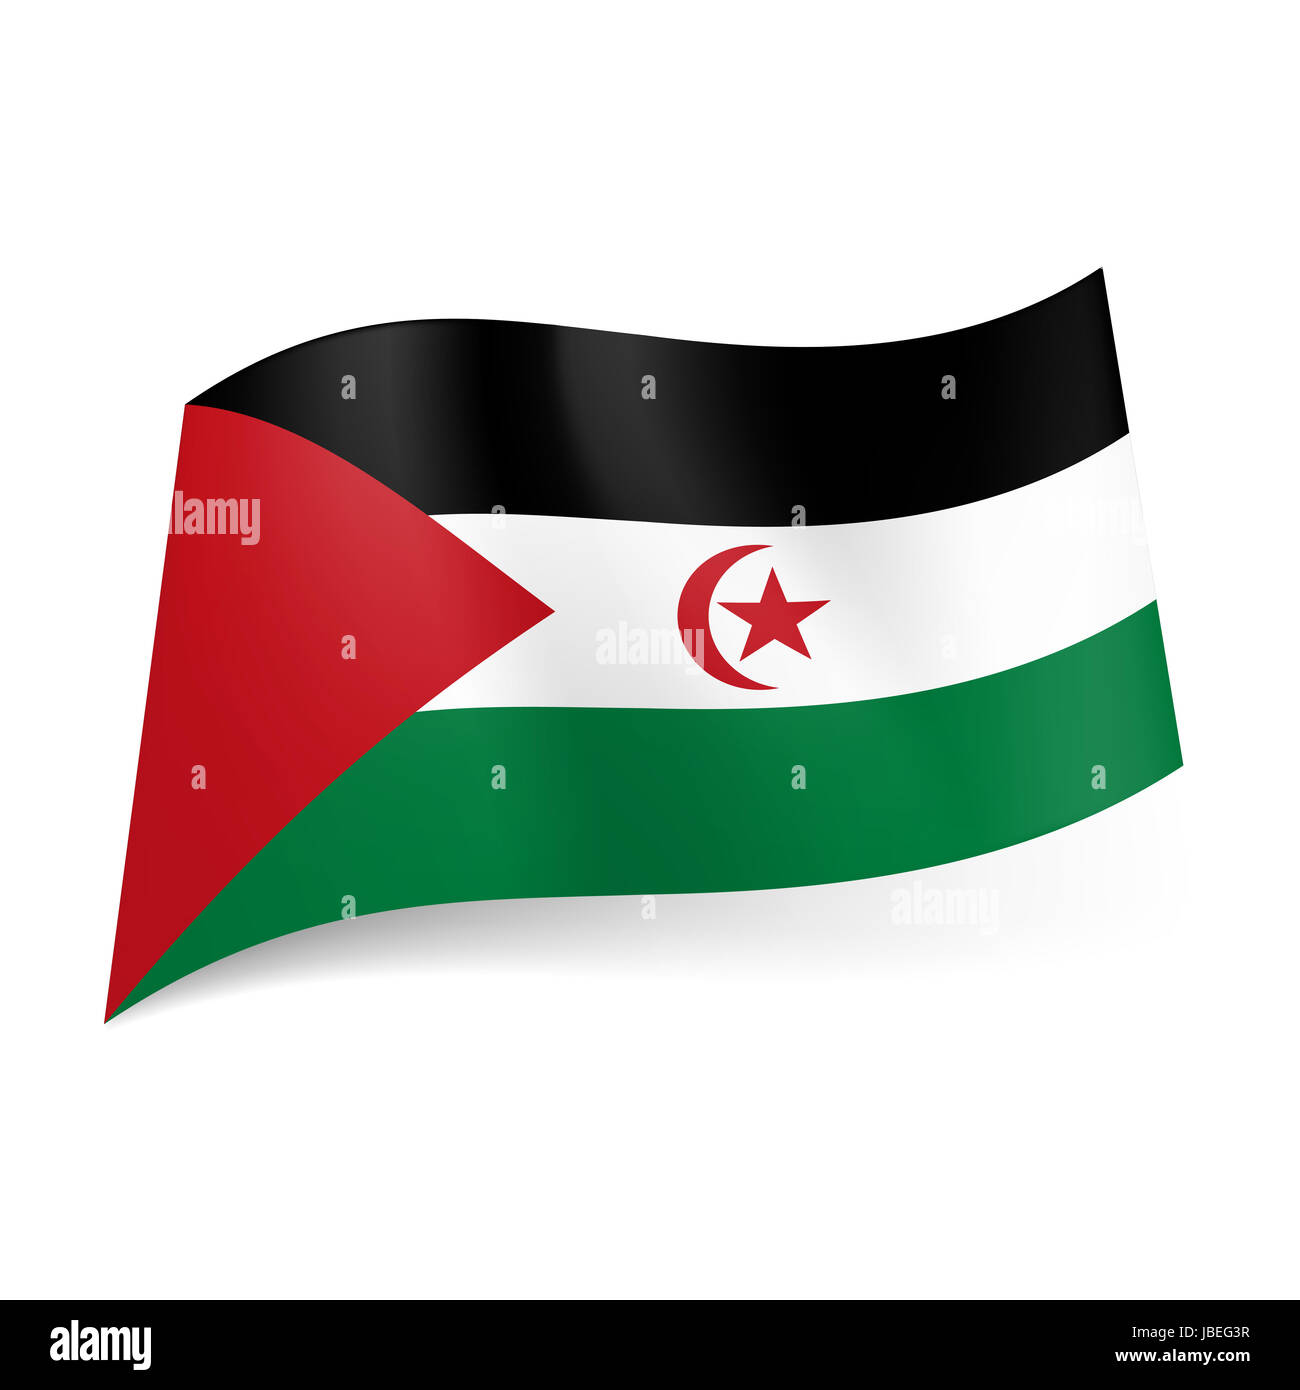 La bandera nacional de la República Árabe Saharaui Democrática. Negro,  blanco y verde de franjas horizontales con un triángulo rojo, media luna y  la estrella Fotografía de stock - Alamy